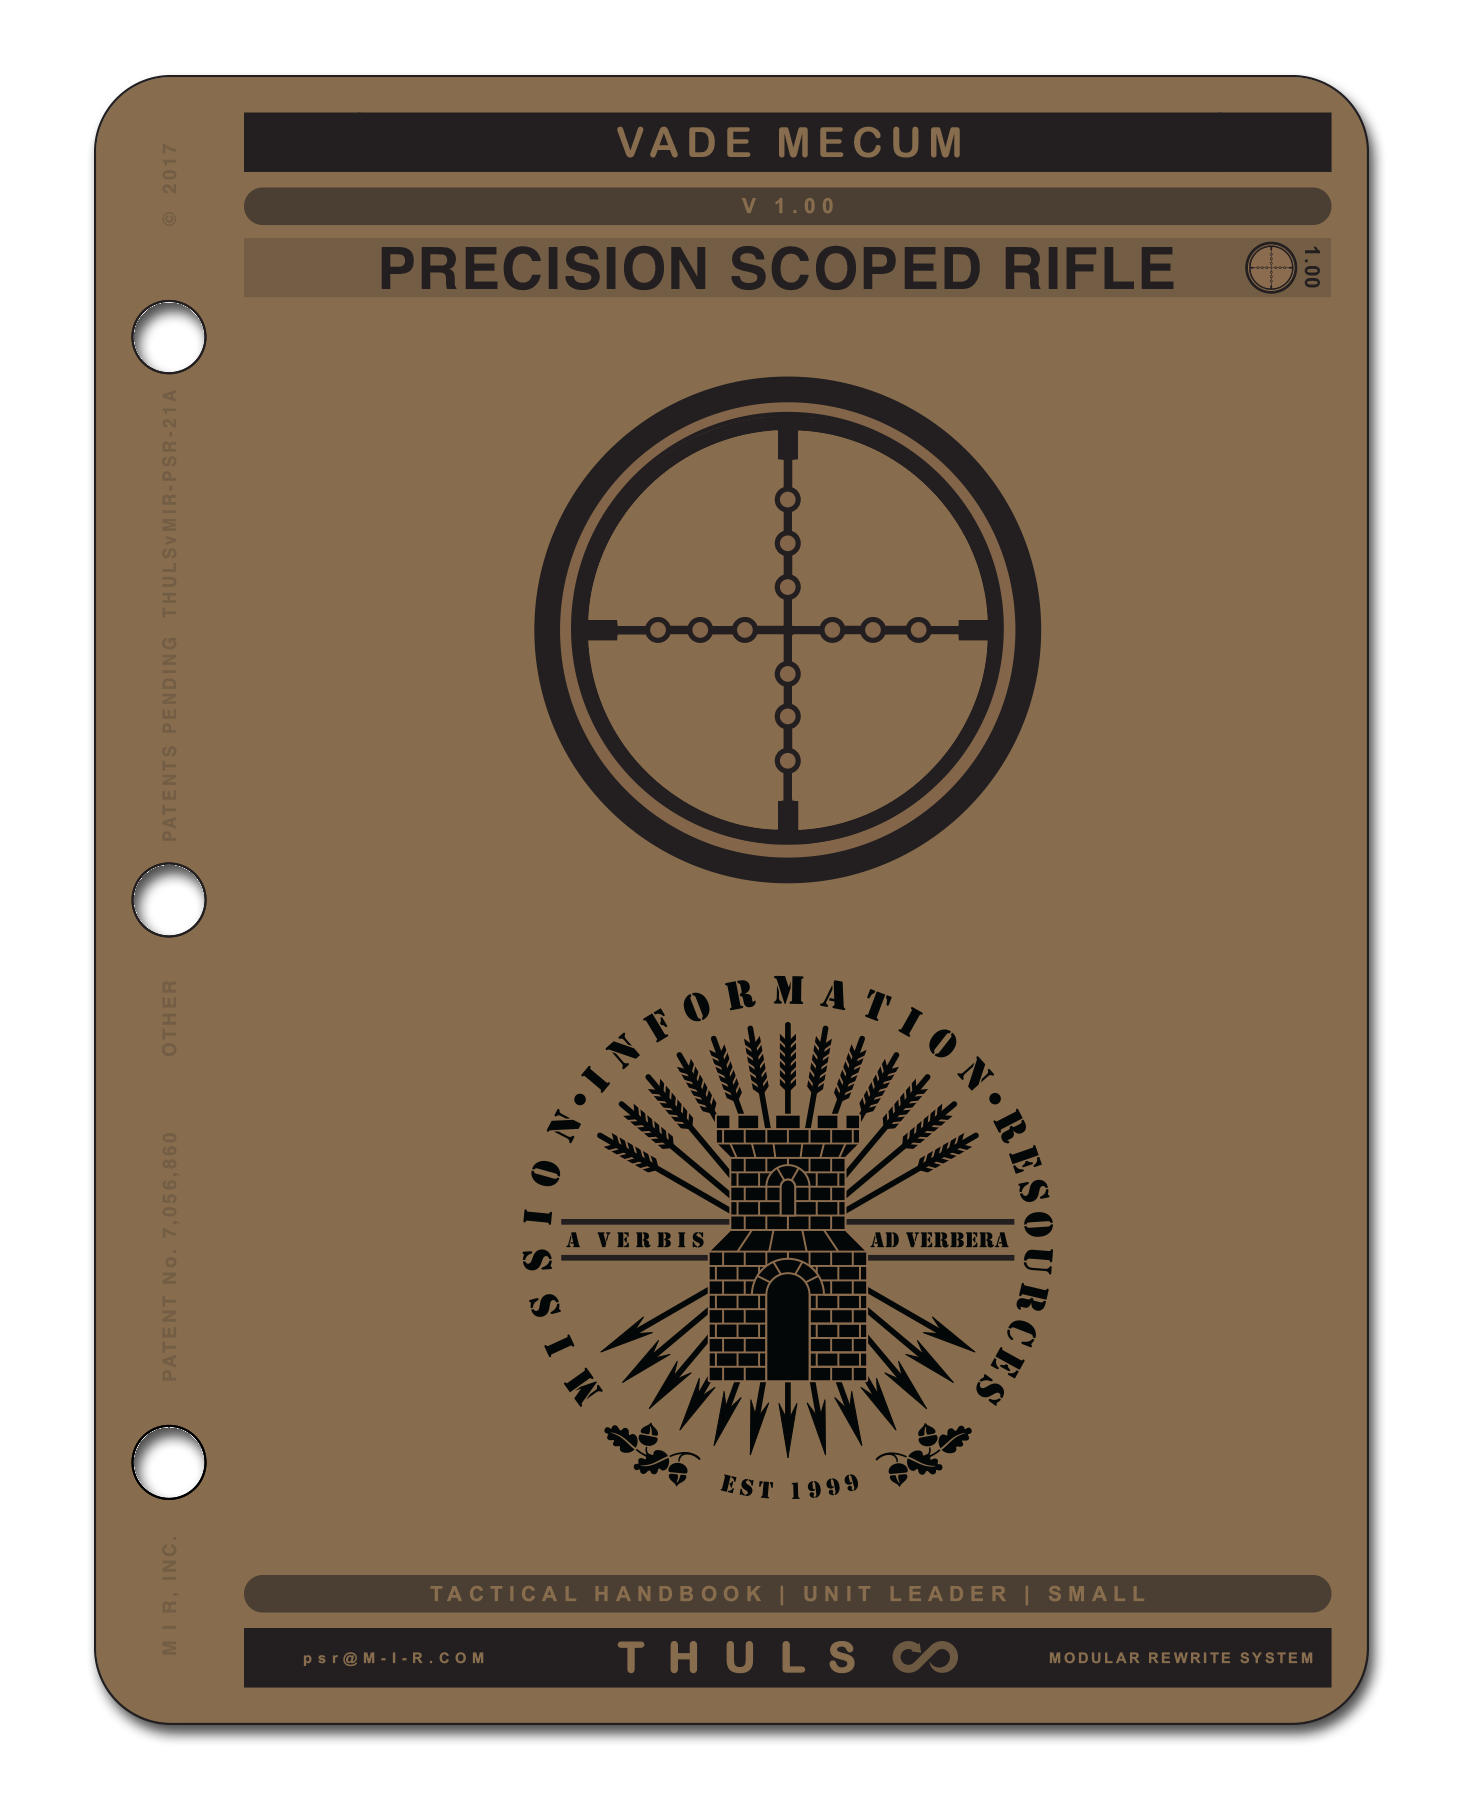 fieldcraft-here-is-my-field-gear-looking-for-opinions-sniper-s